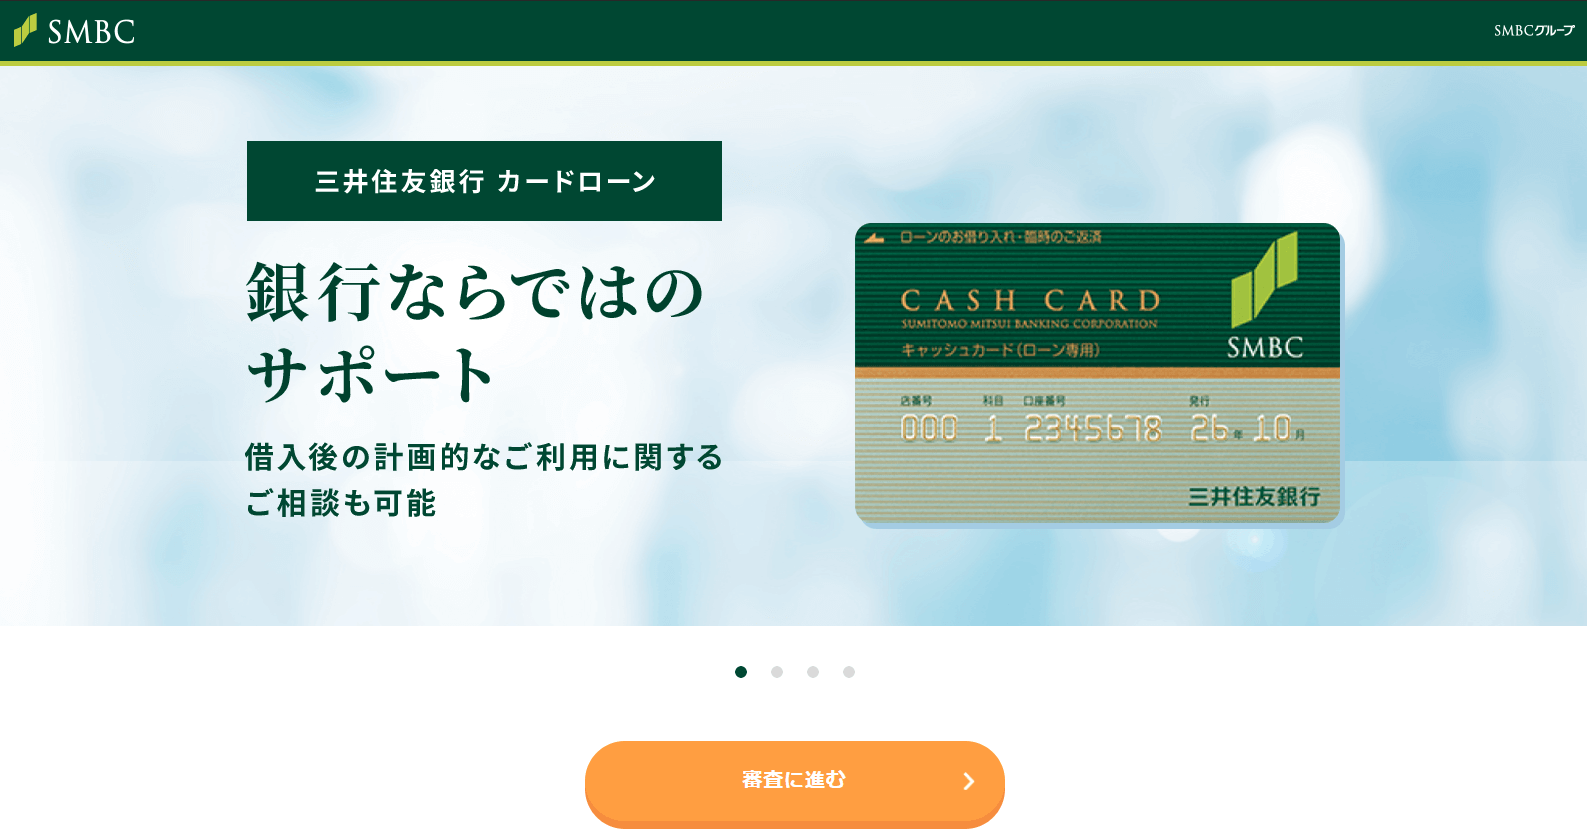 三井住友銀行カードローンの公式サイトをキャプチャした画像